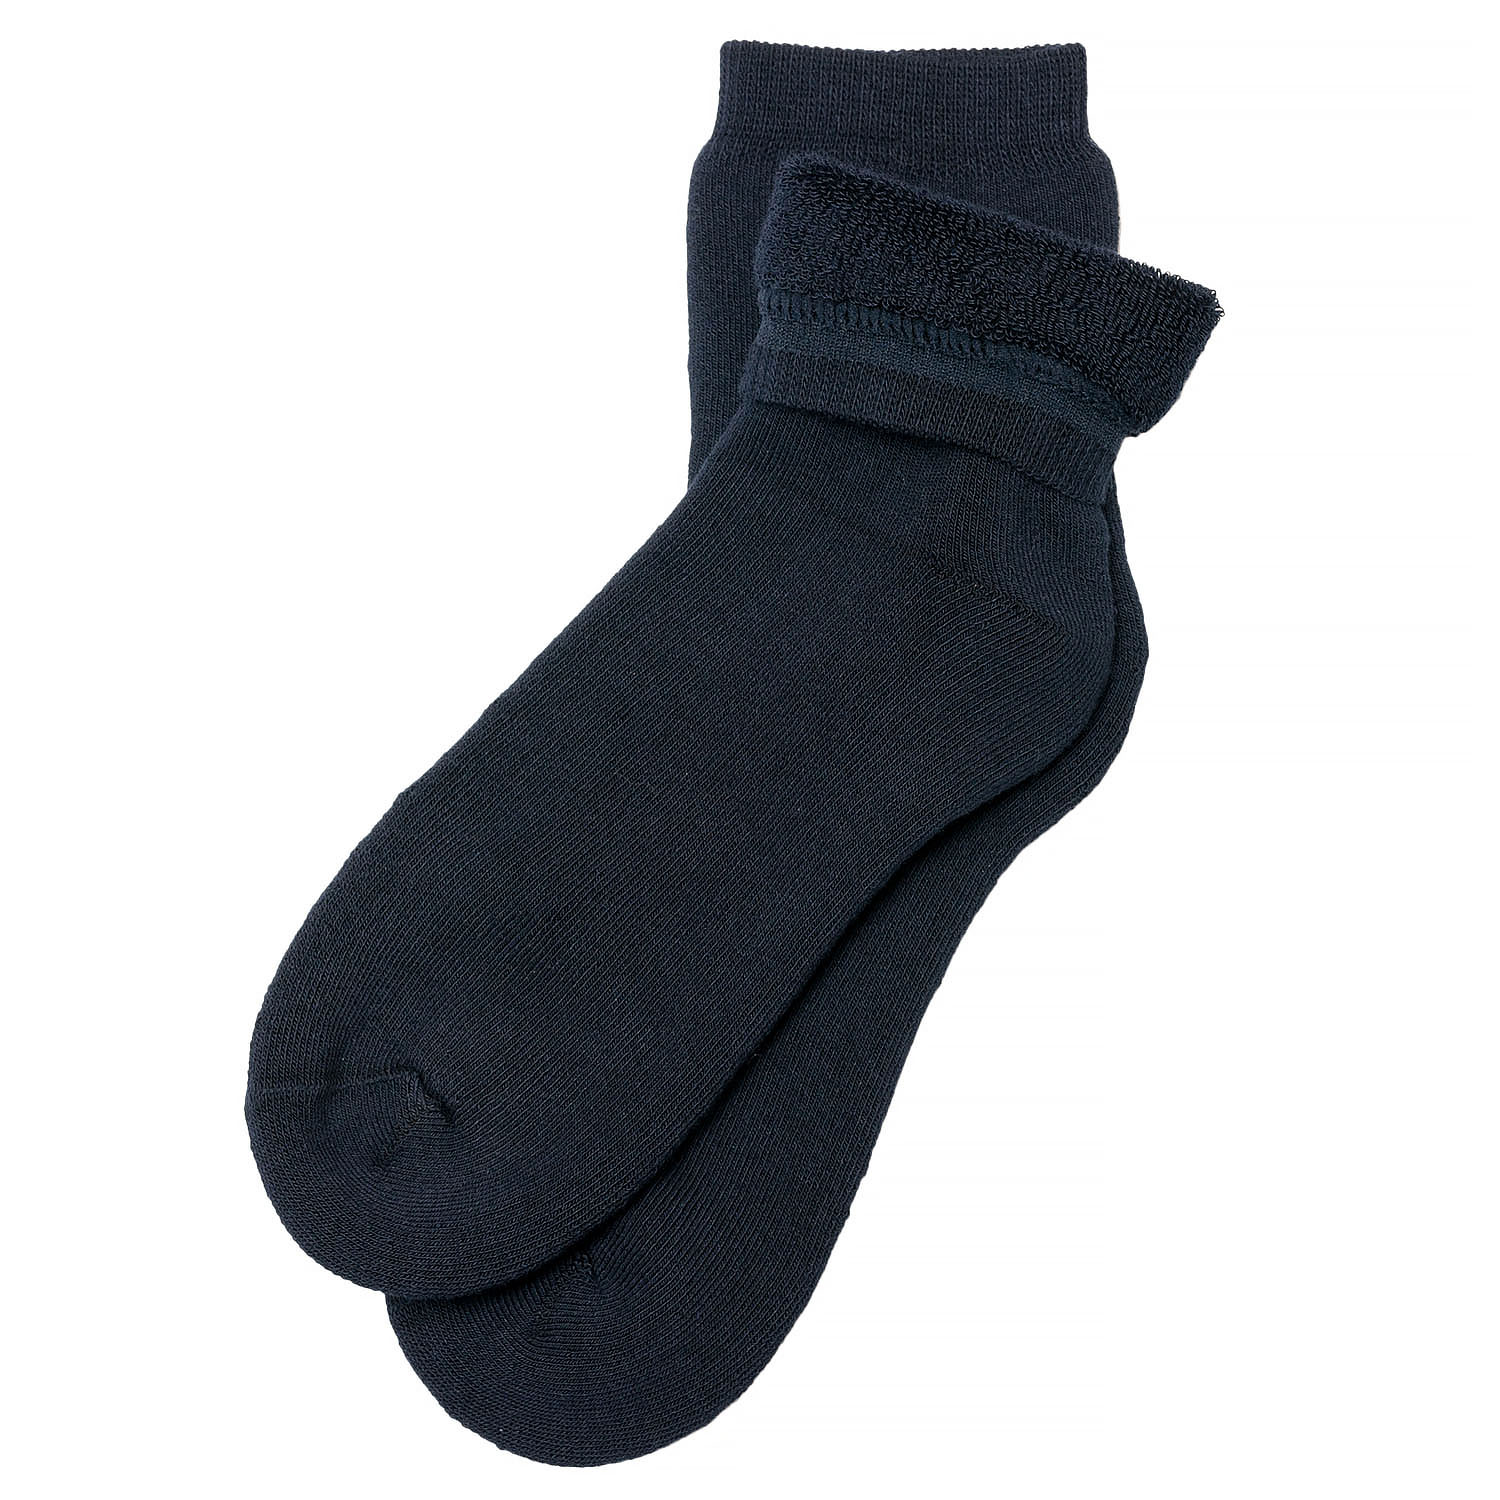 Купить махровые носки. Тёплые носки мужские. Носки махровые. Носки теплые махровые мужские. Носки мужские зимние.